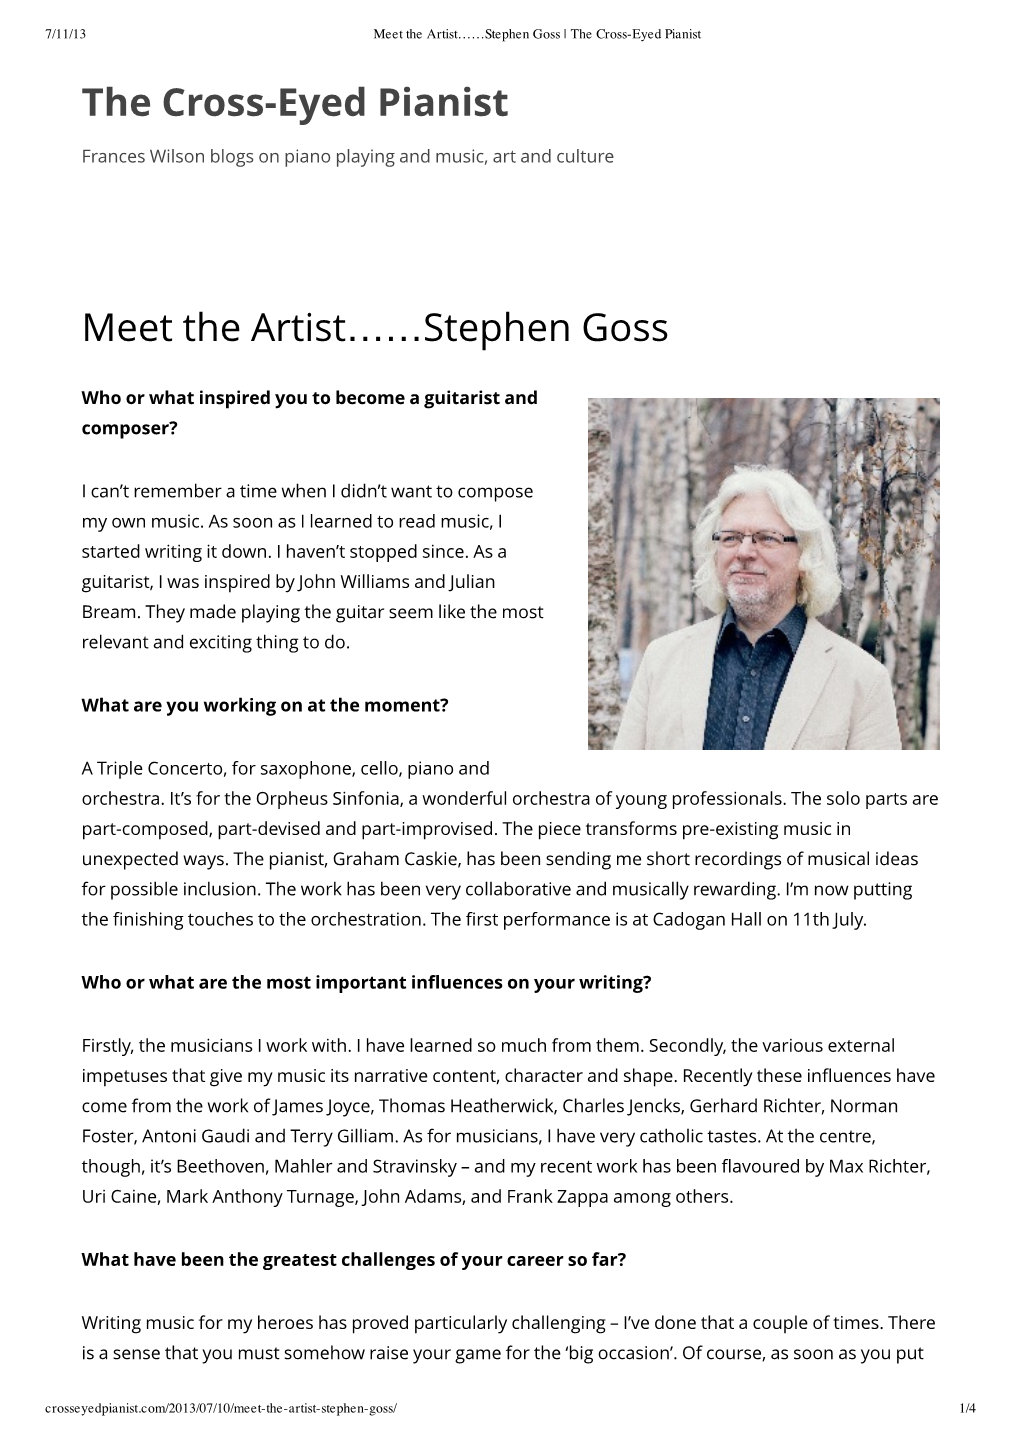 The Cross-Eyed Pianist Meet the Artist..Stephen Goss